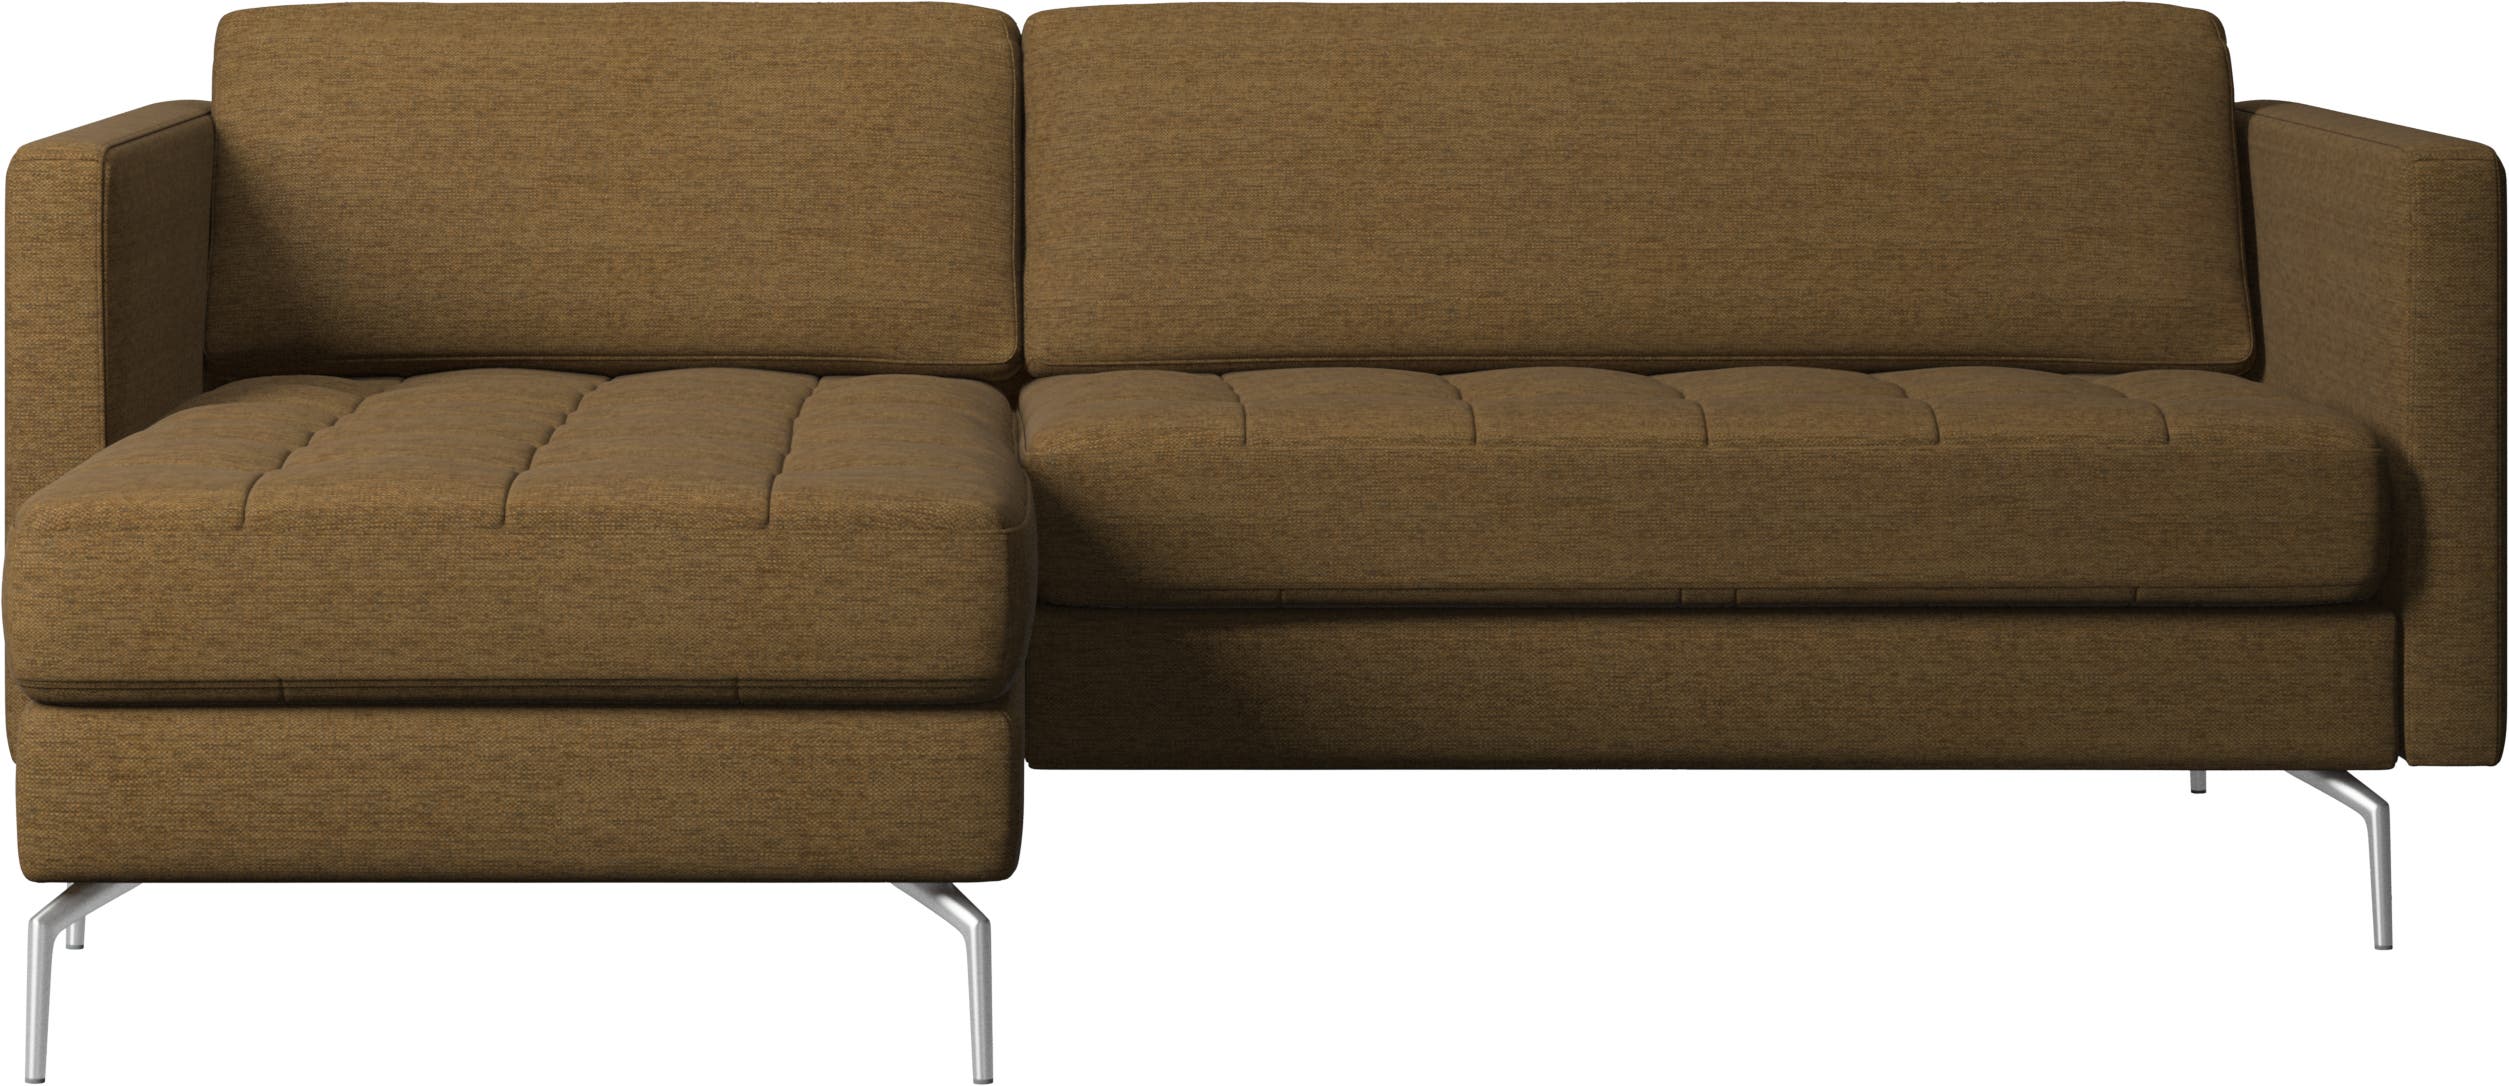 Osaka-sohva, sisältää lepomoduulin, tuftattu istuin